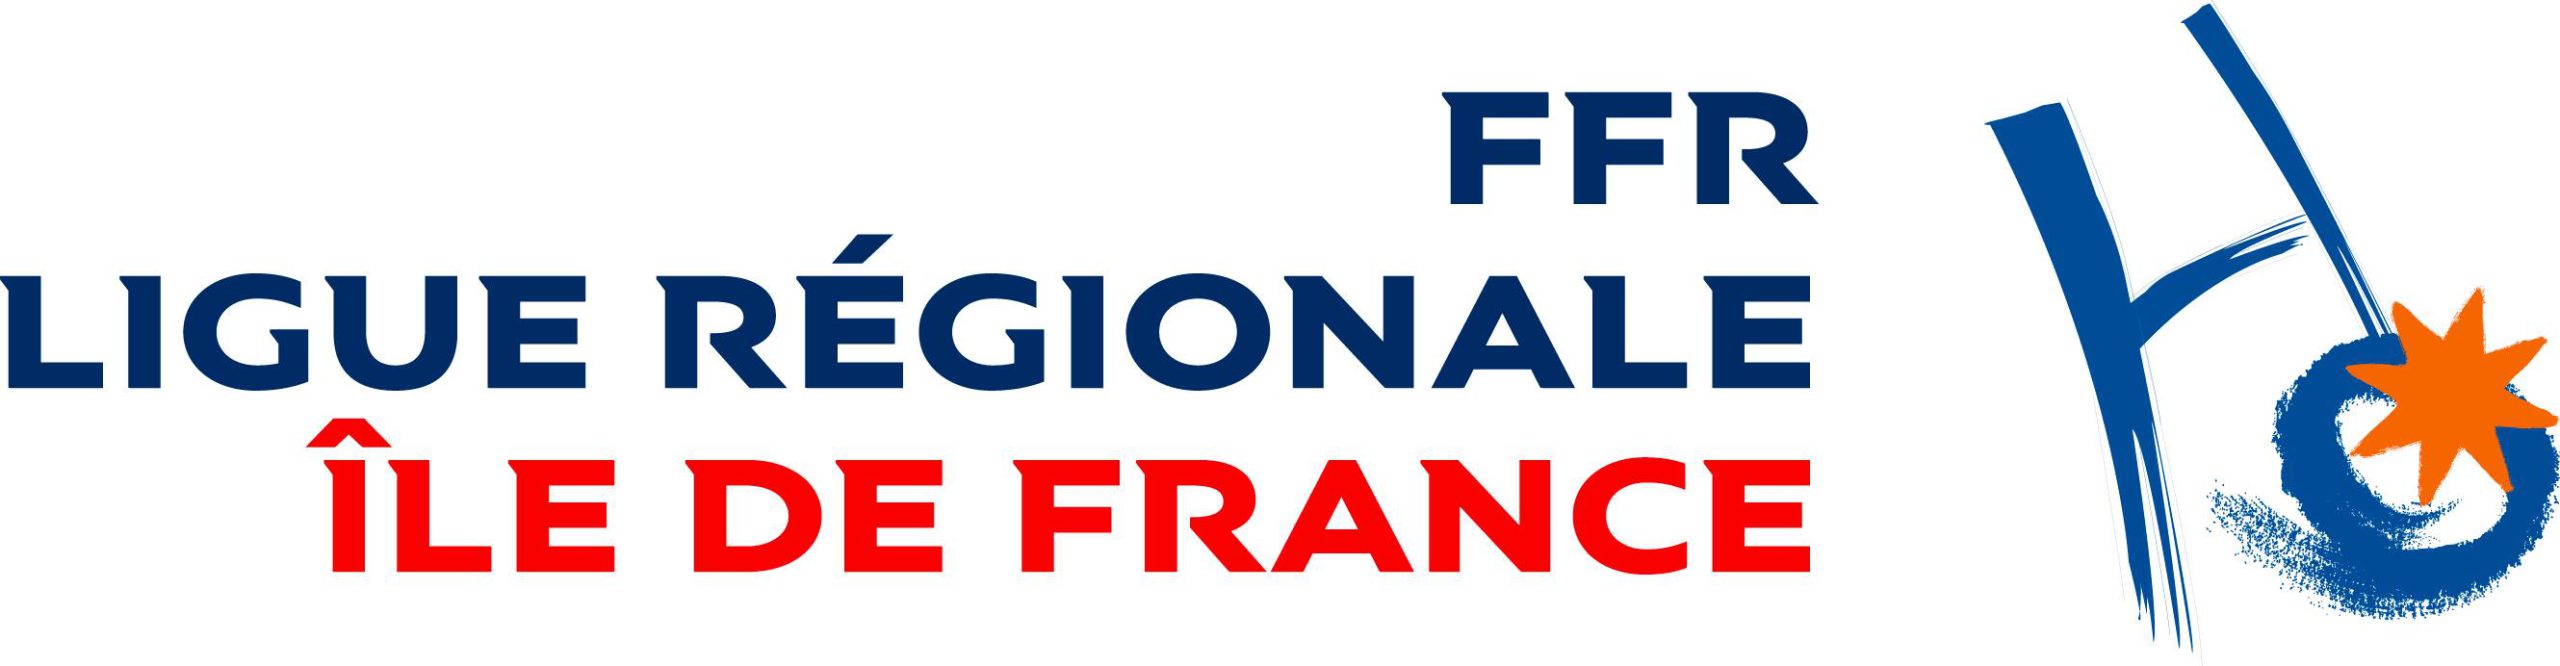 logo ligue ffr idf